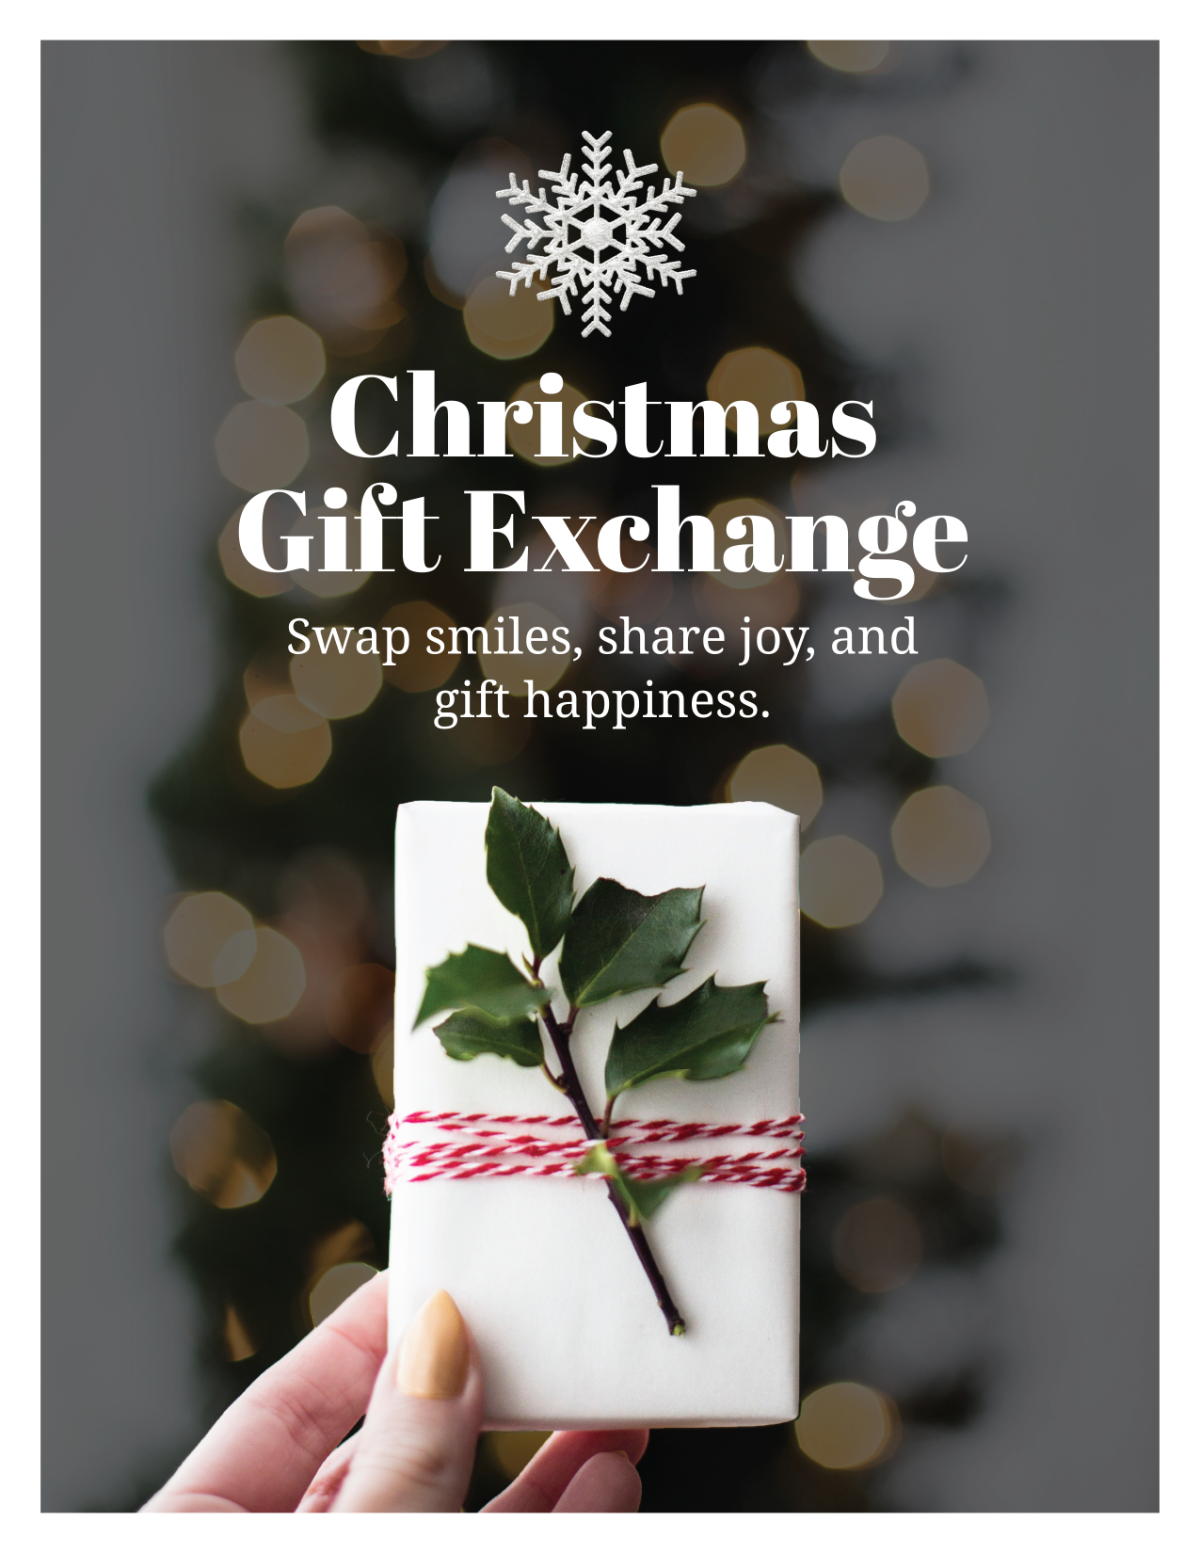 Christmas Gift Exchange Flyer Template